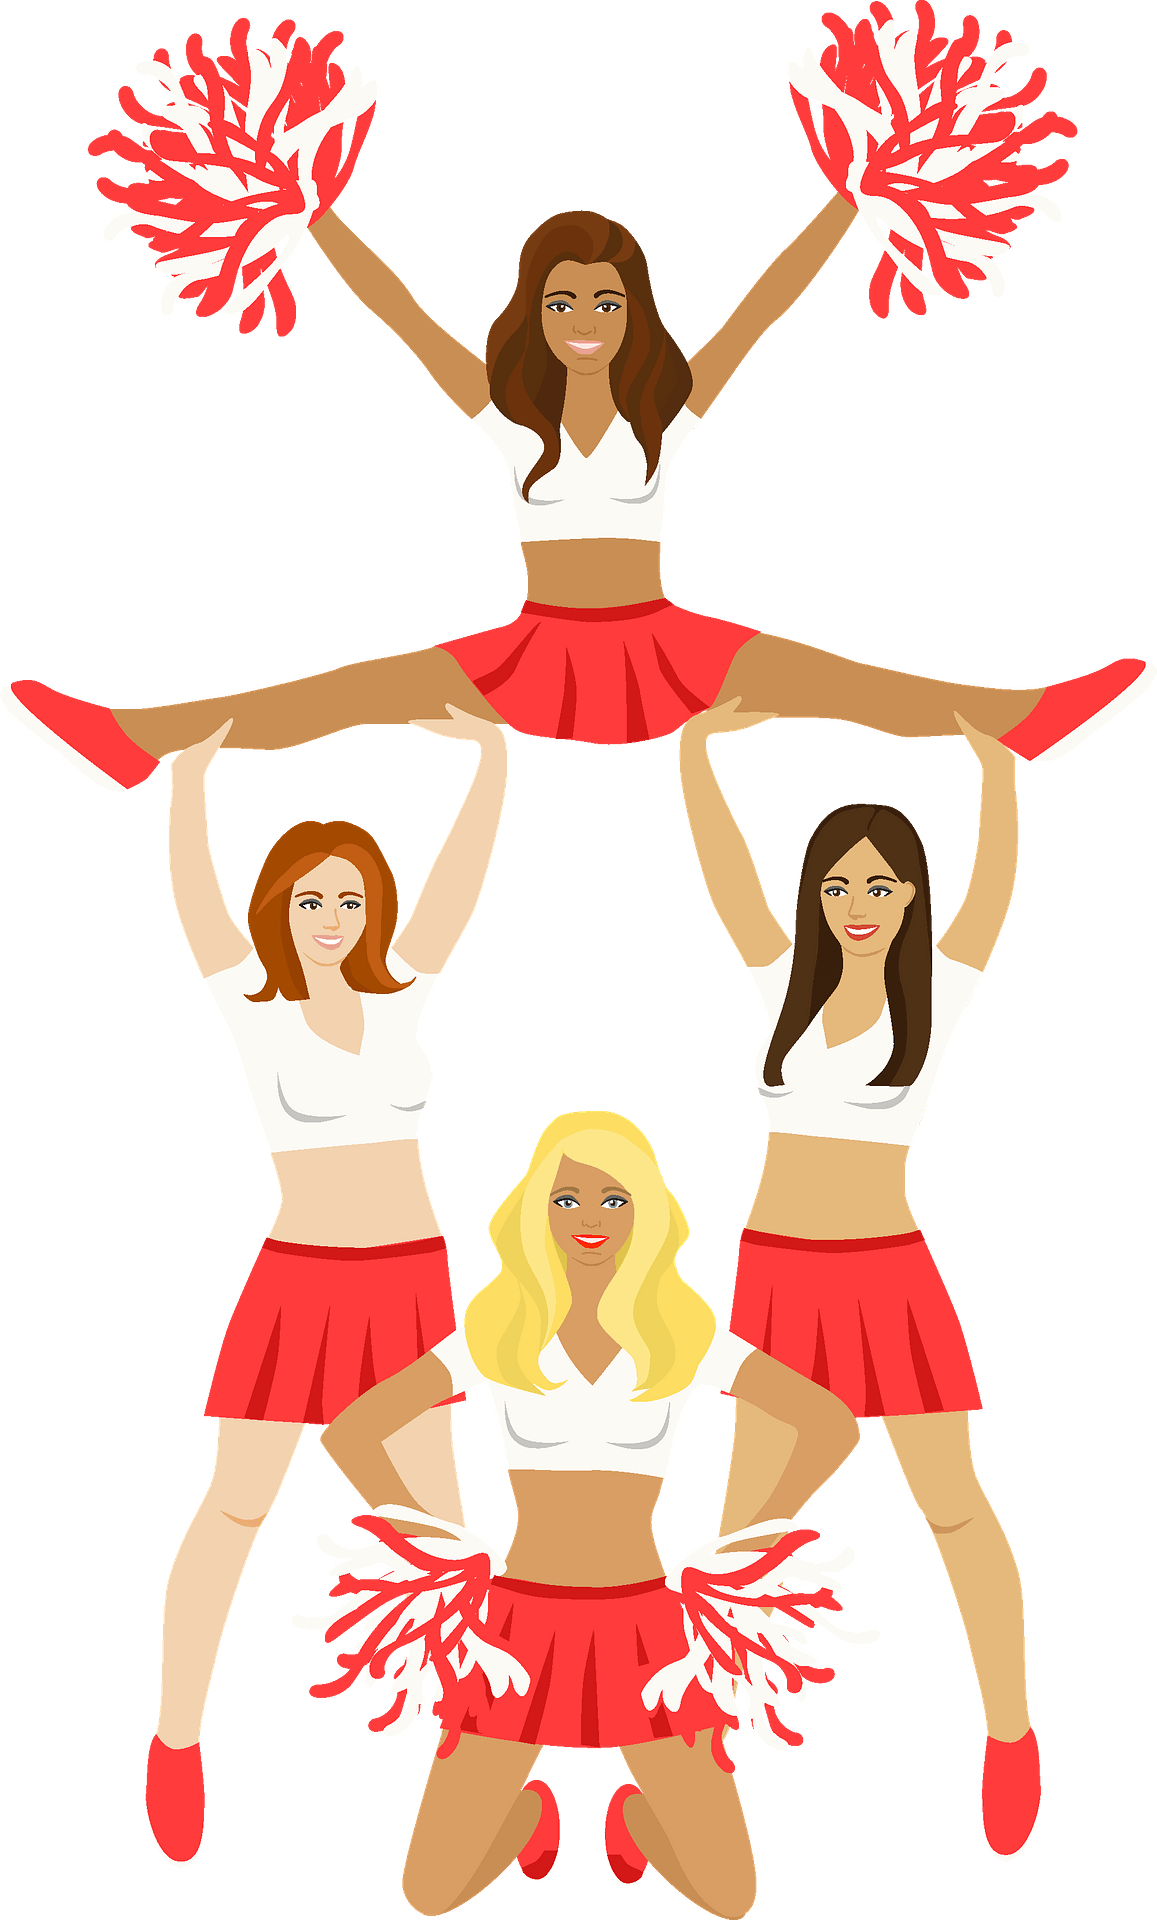 Cheerleader Group PNG Image